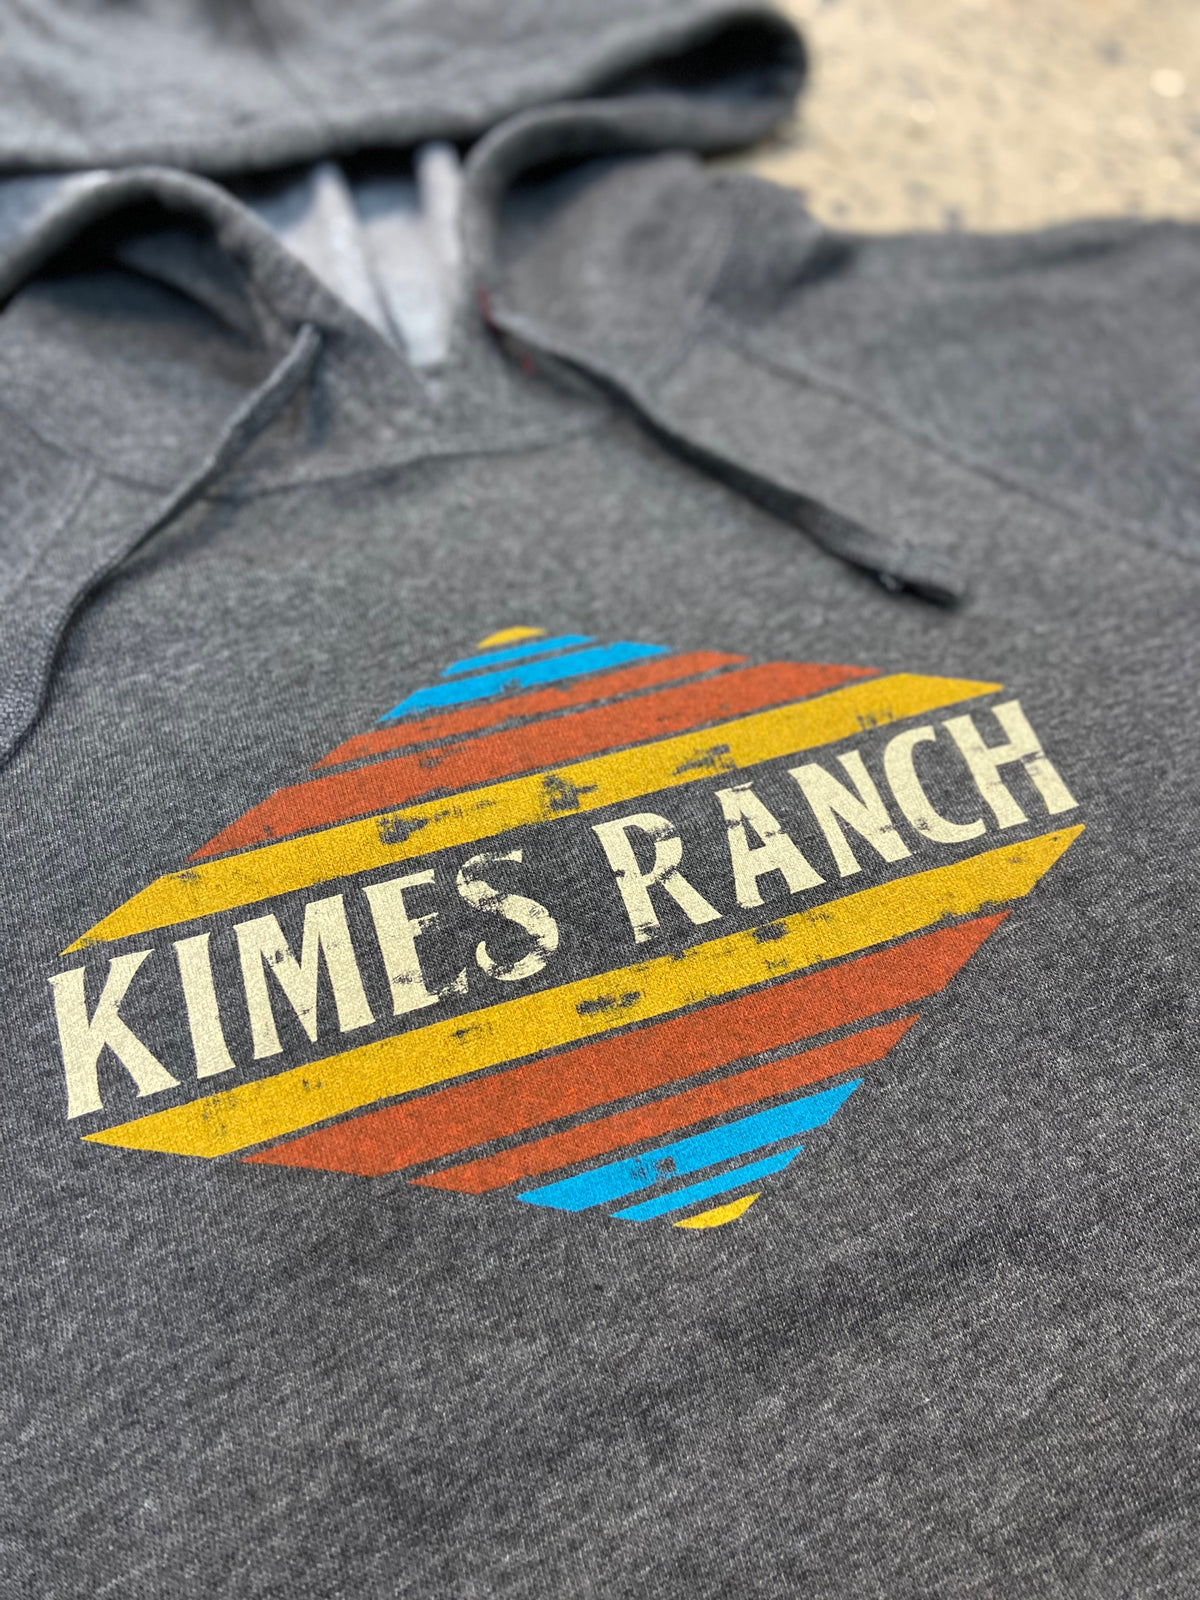 Kimes Ranch Hoodie - El Paso Hoodie (Charcoal)